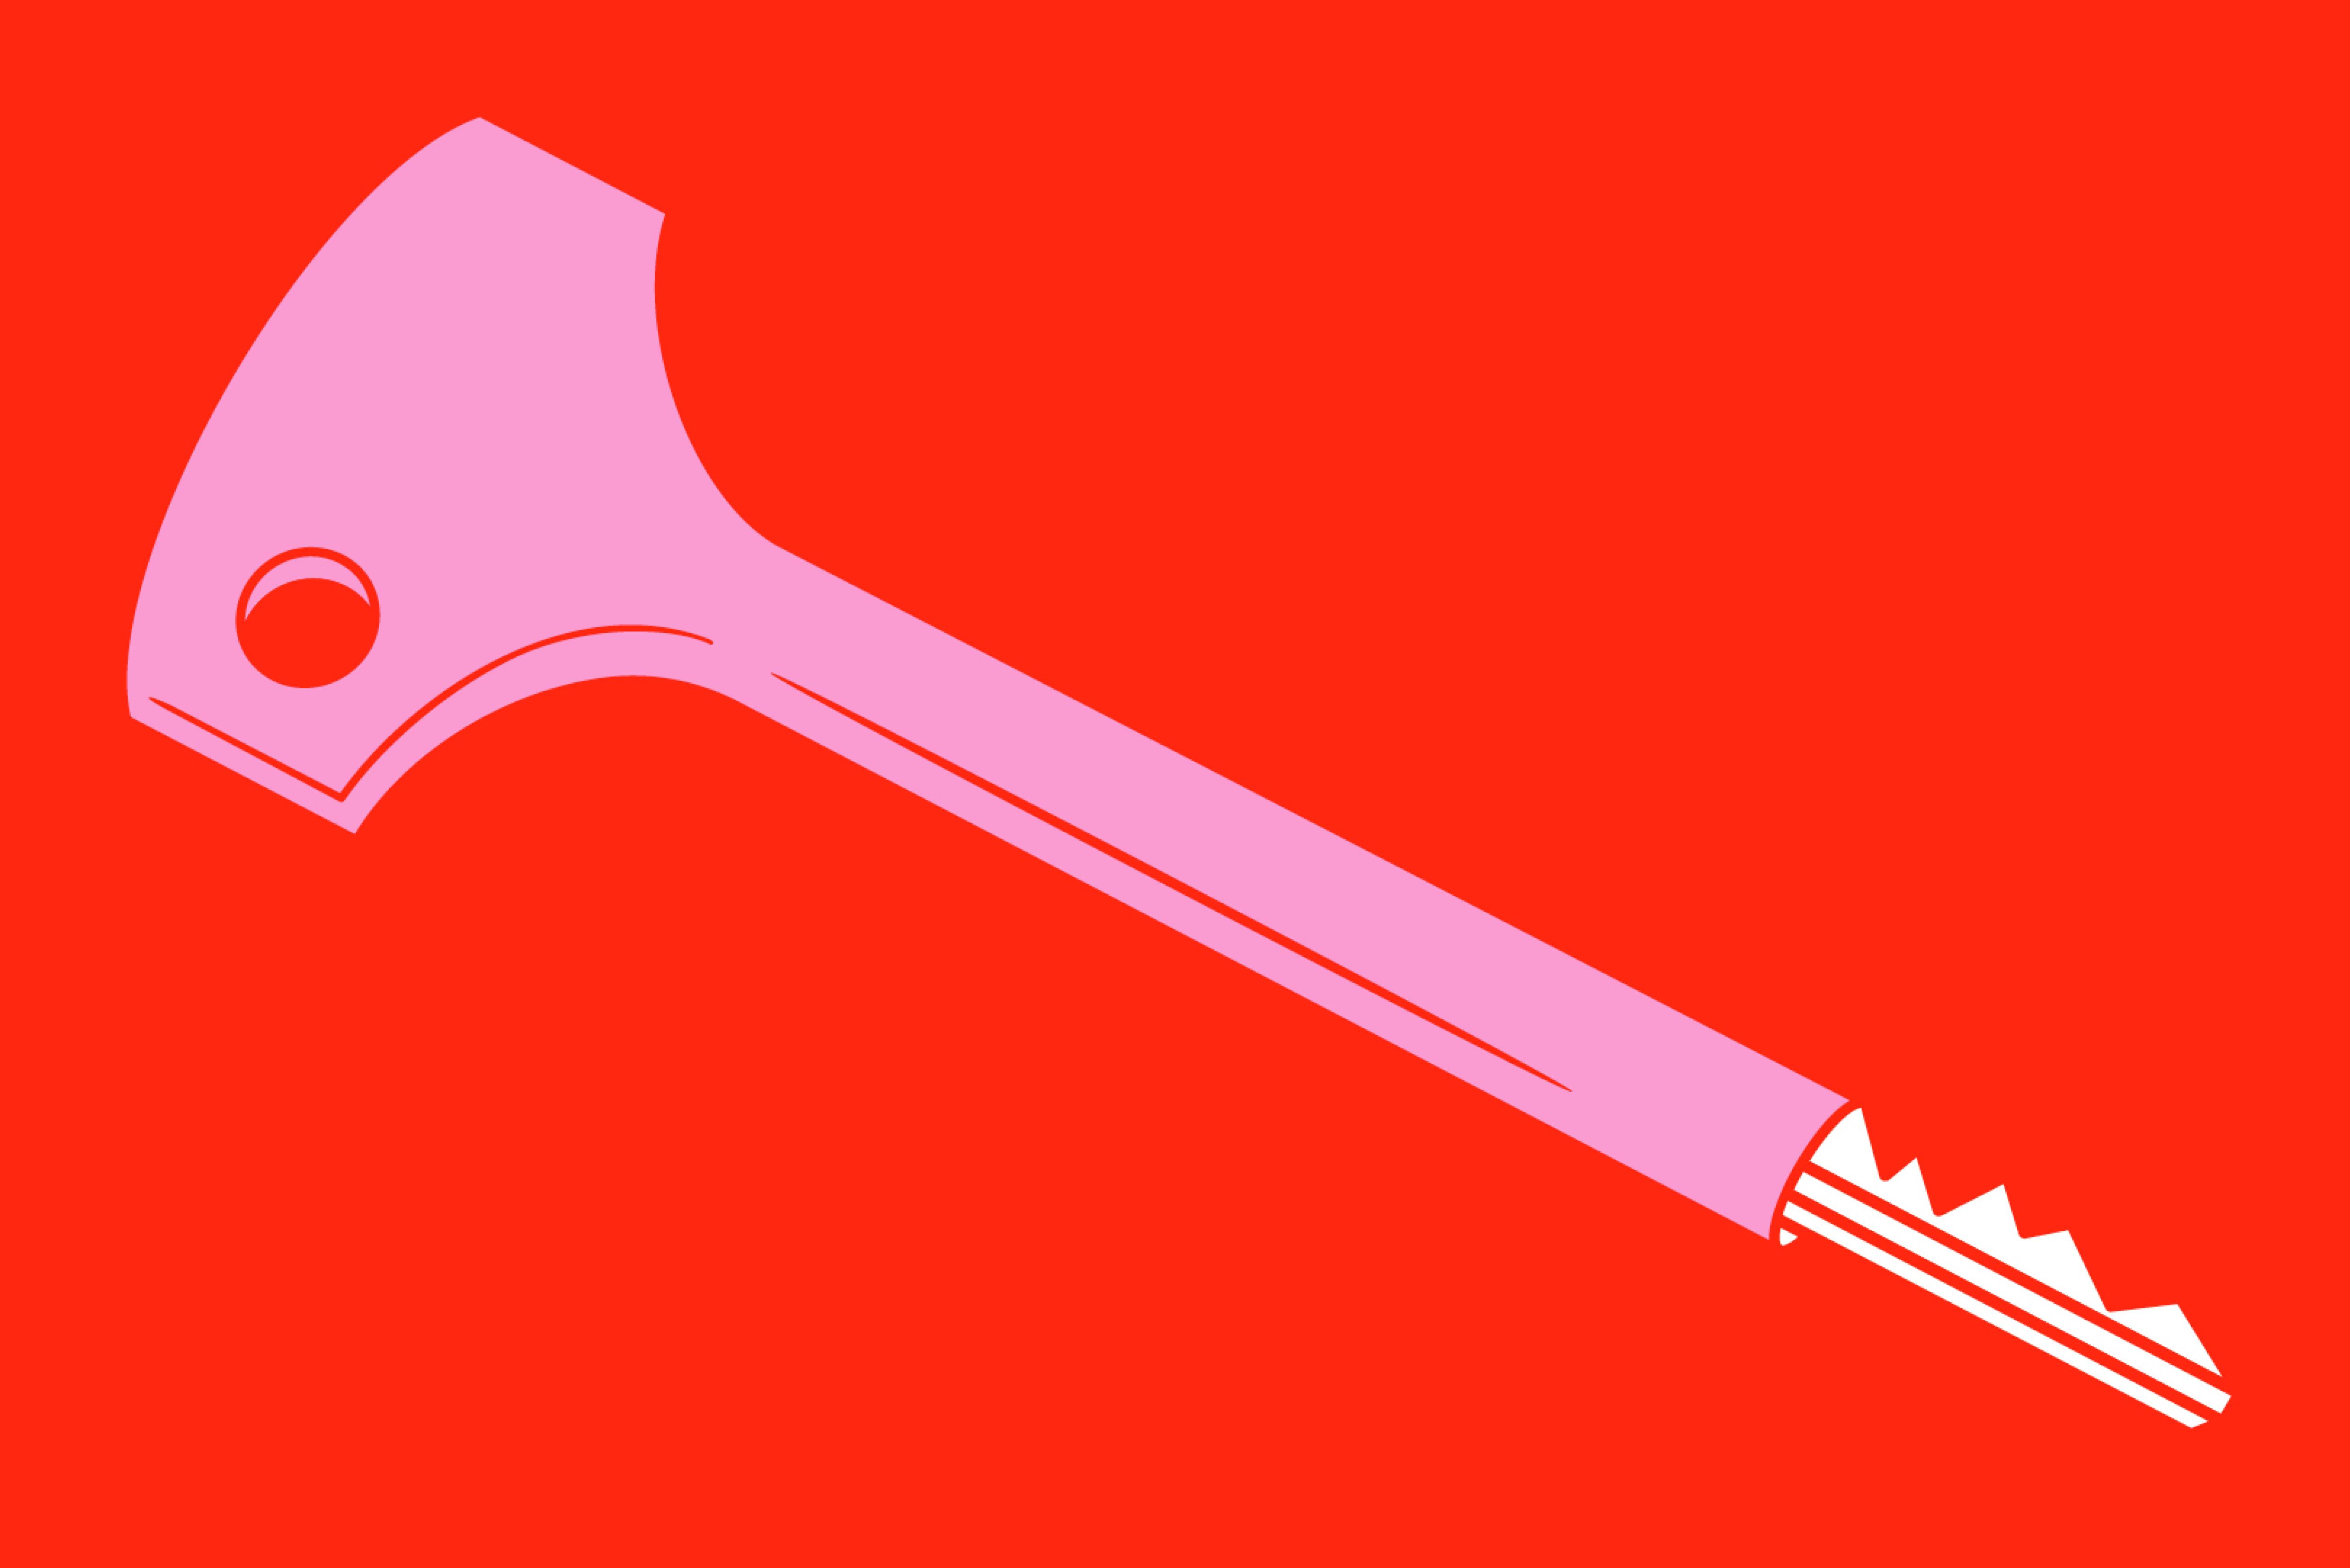 Das Festivalmotiv ist ein pinker Schlüssel im DDR-Design auf rotem Hintergrund.